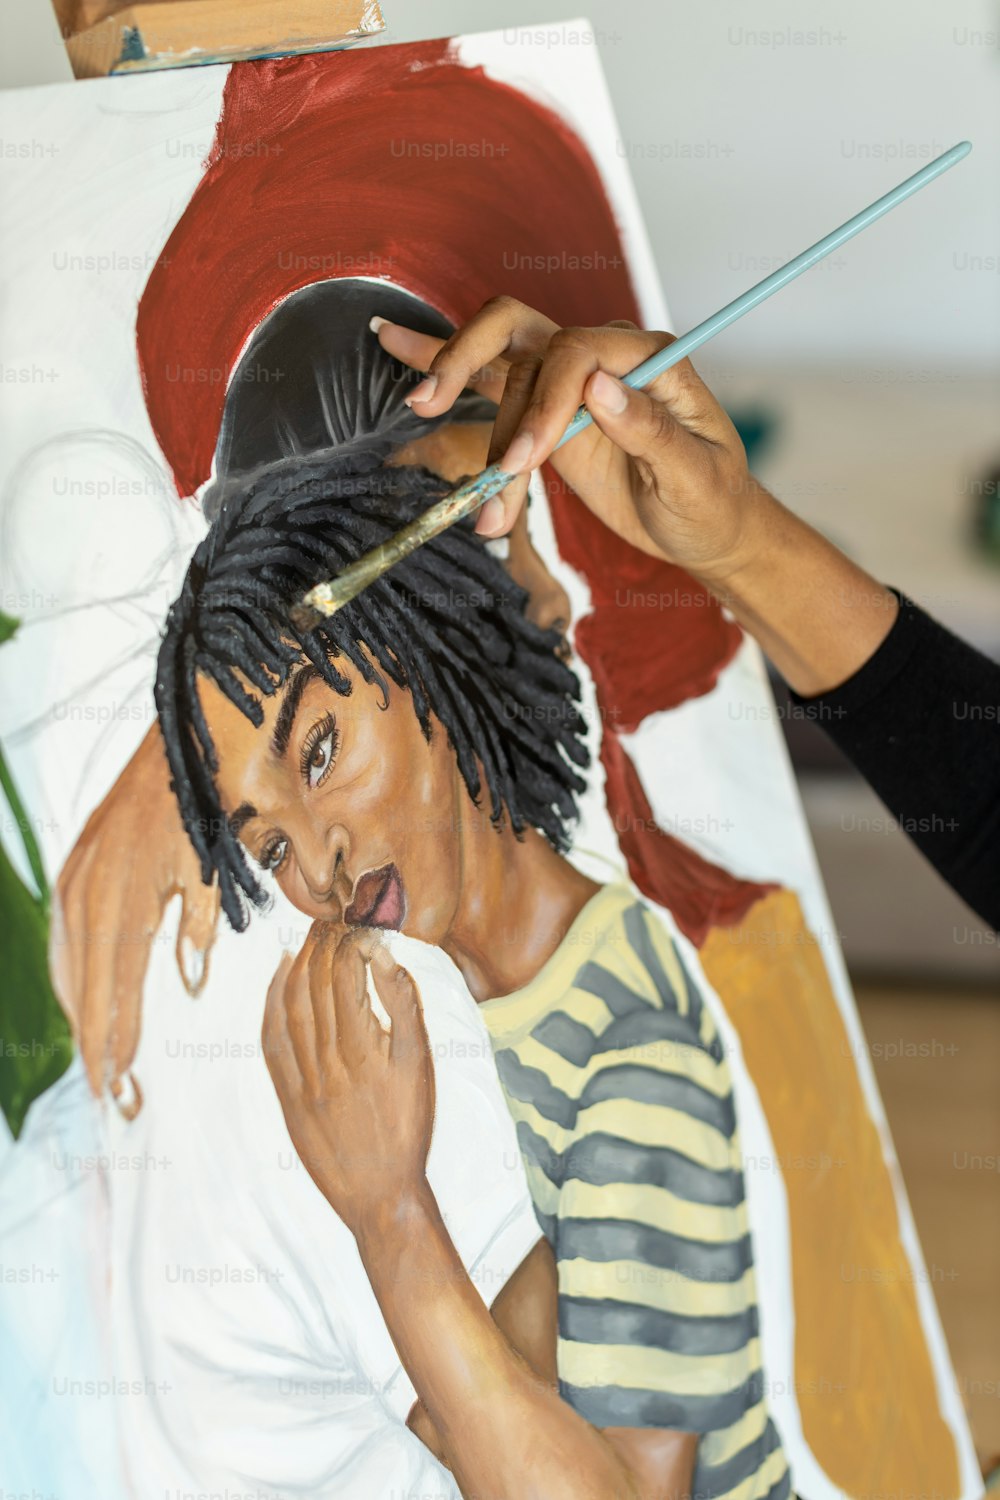 Una donna sta dipingendo l'immagine di un uomo con i dreadlocks